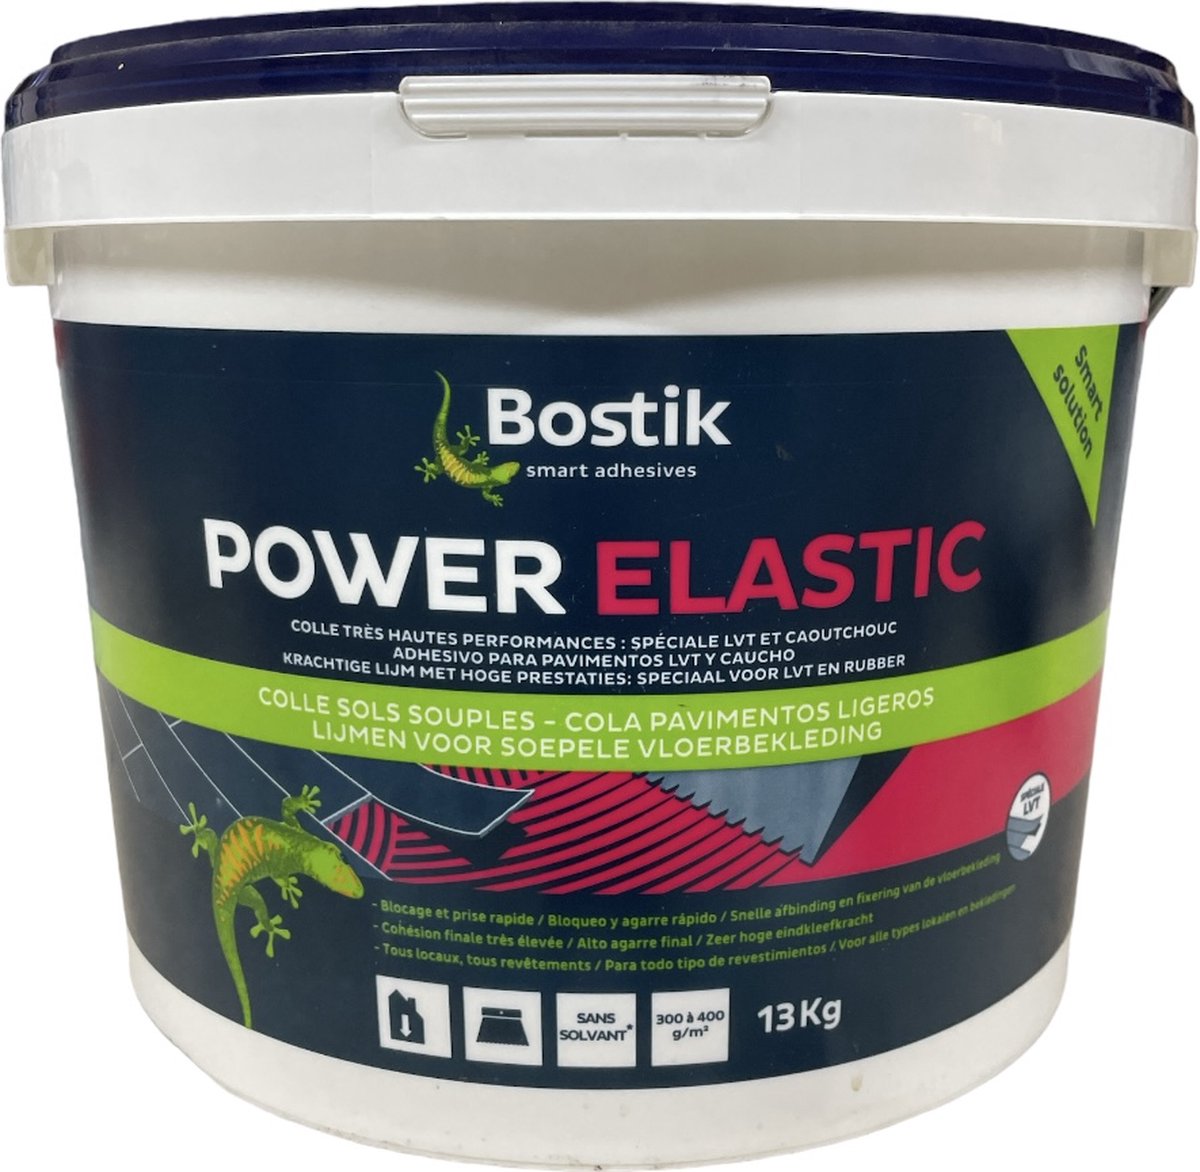 Bostik Power Elastic - Polyvalente lijm voor vloerbekleding - 13 kg | bol